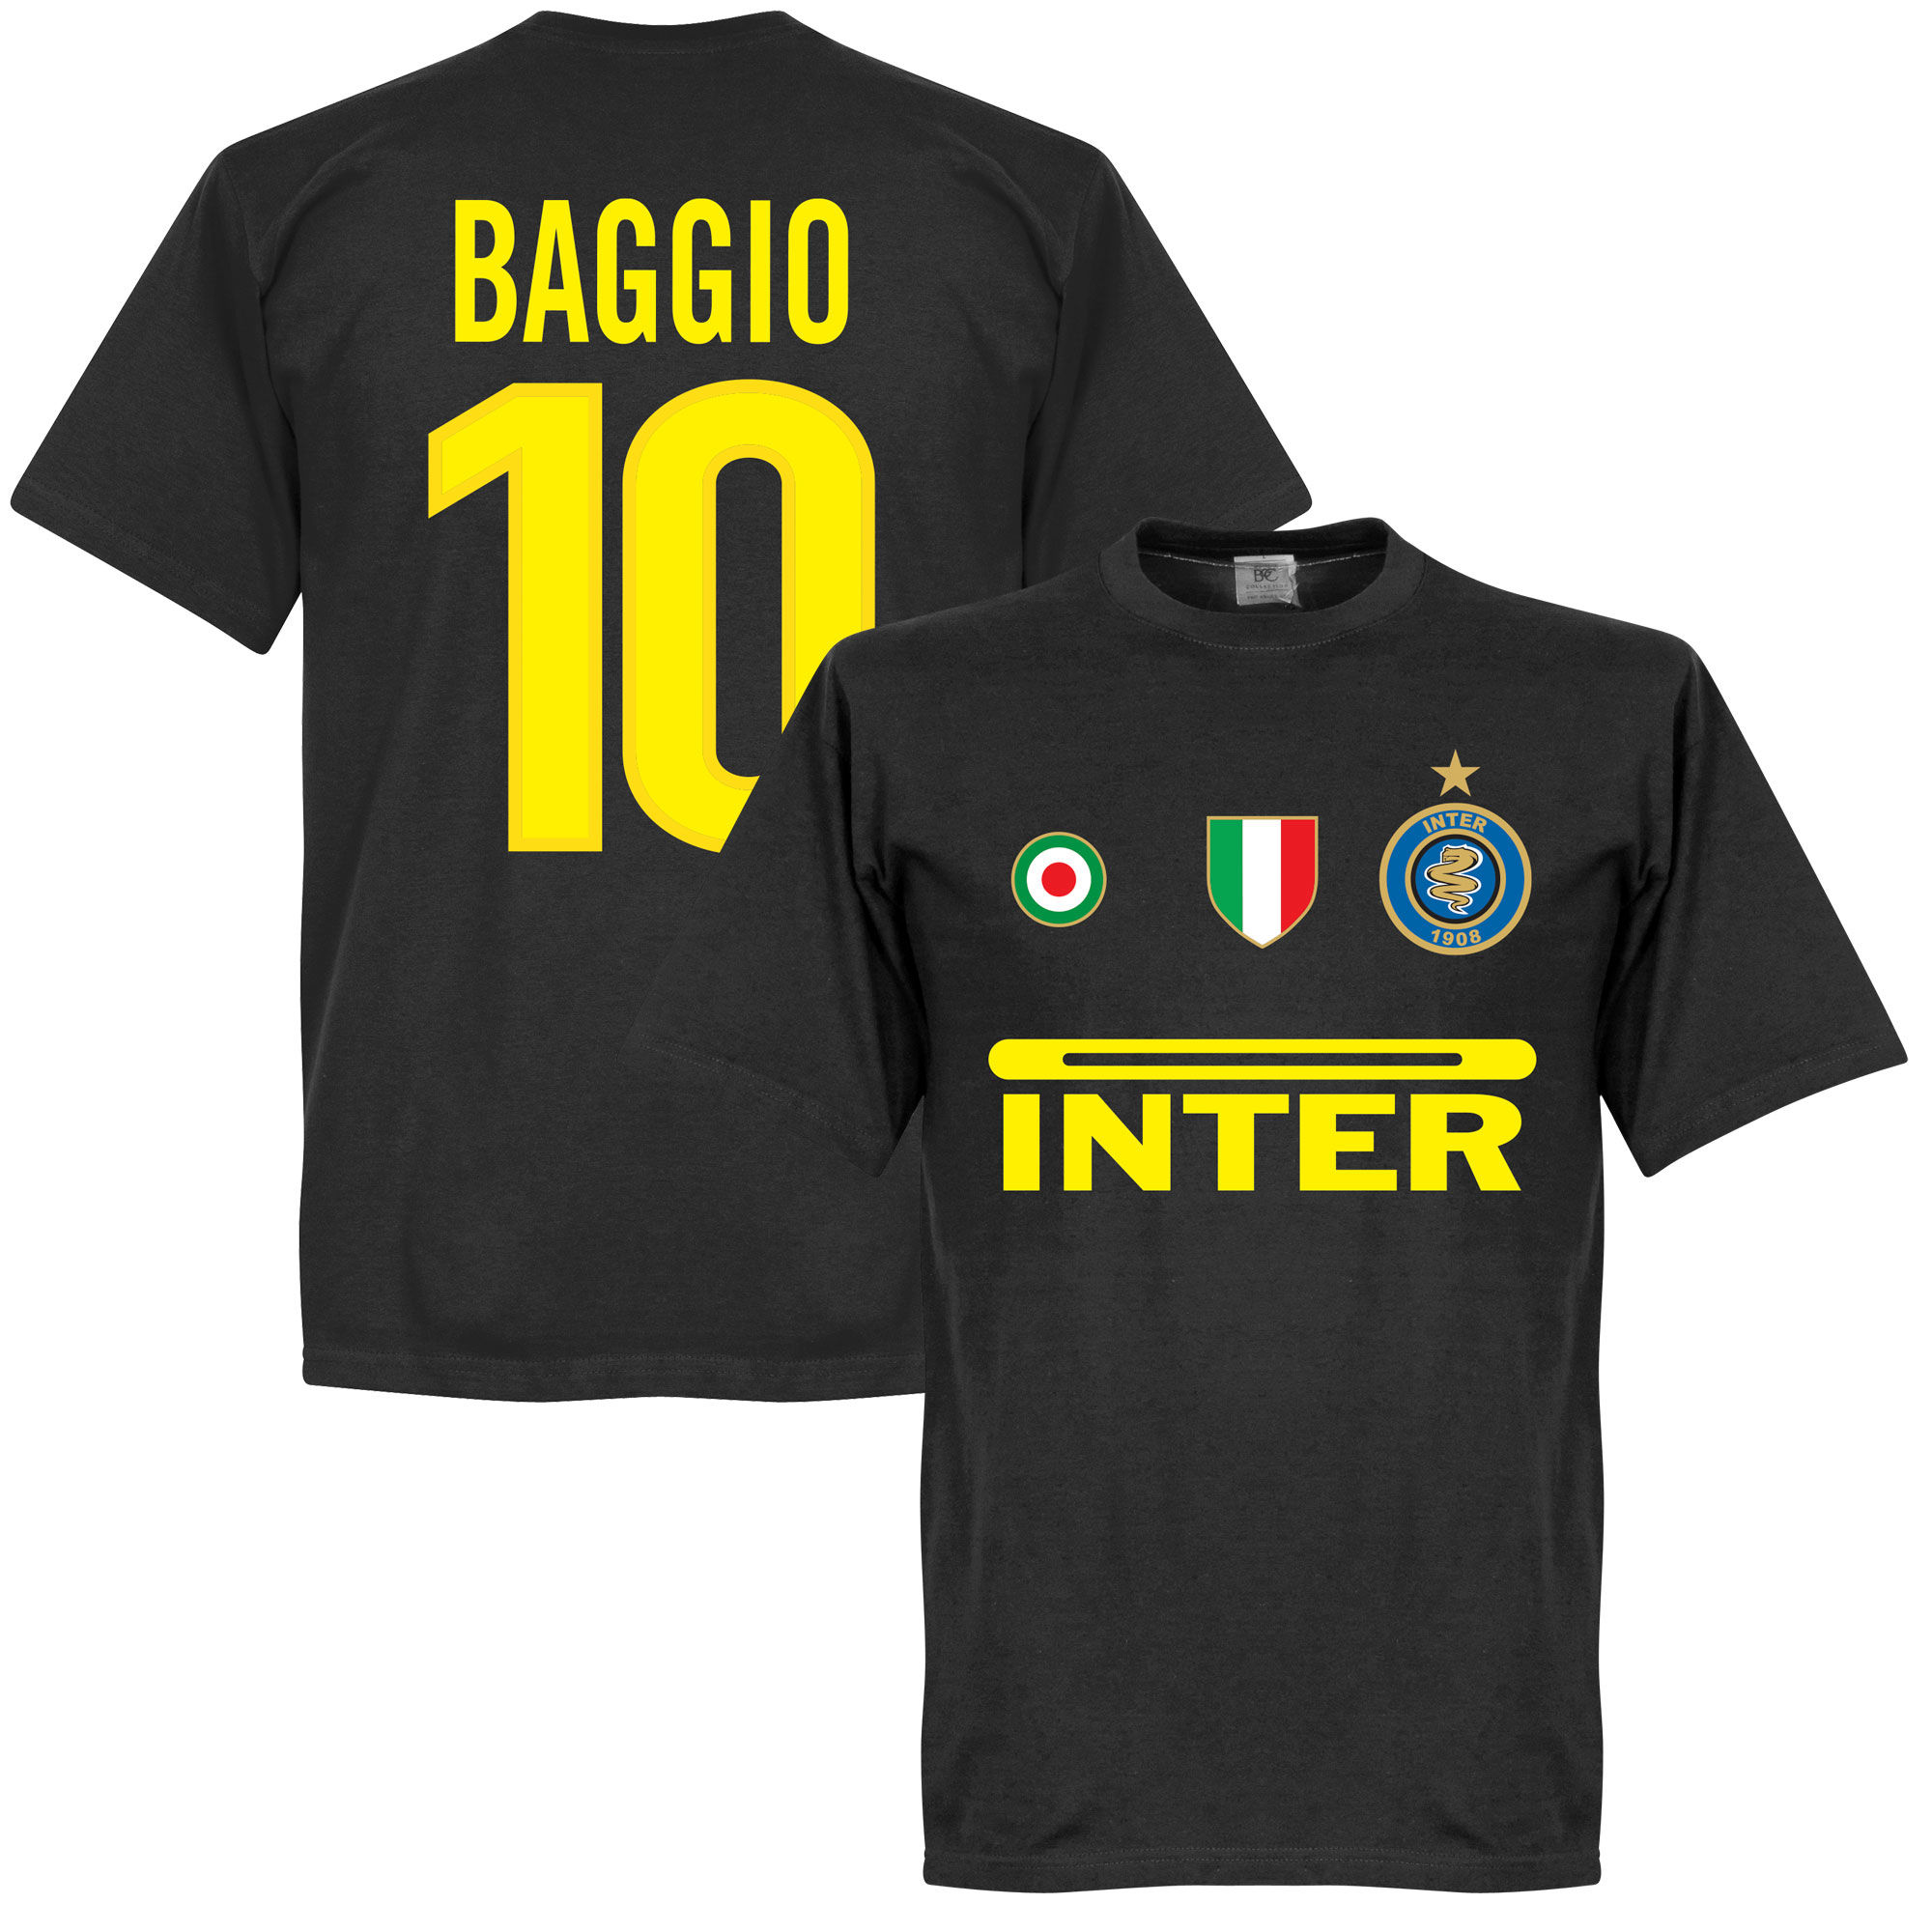 FC Inter Milán - Tričko - Roberto Baggio, číslo 10, černé